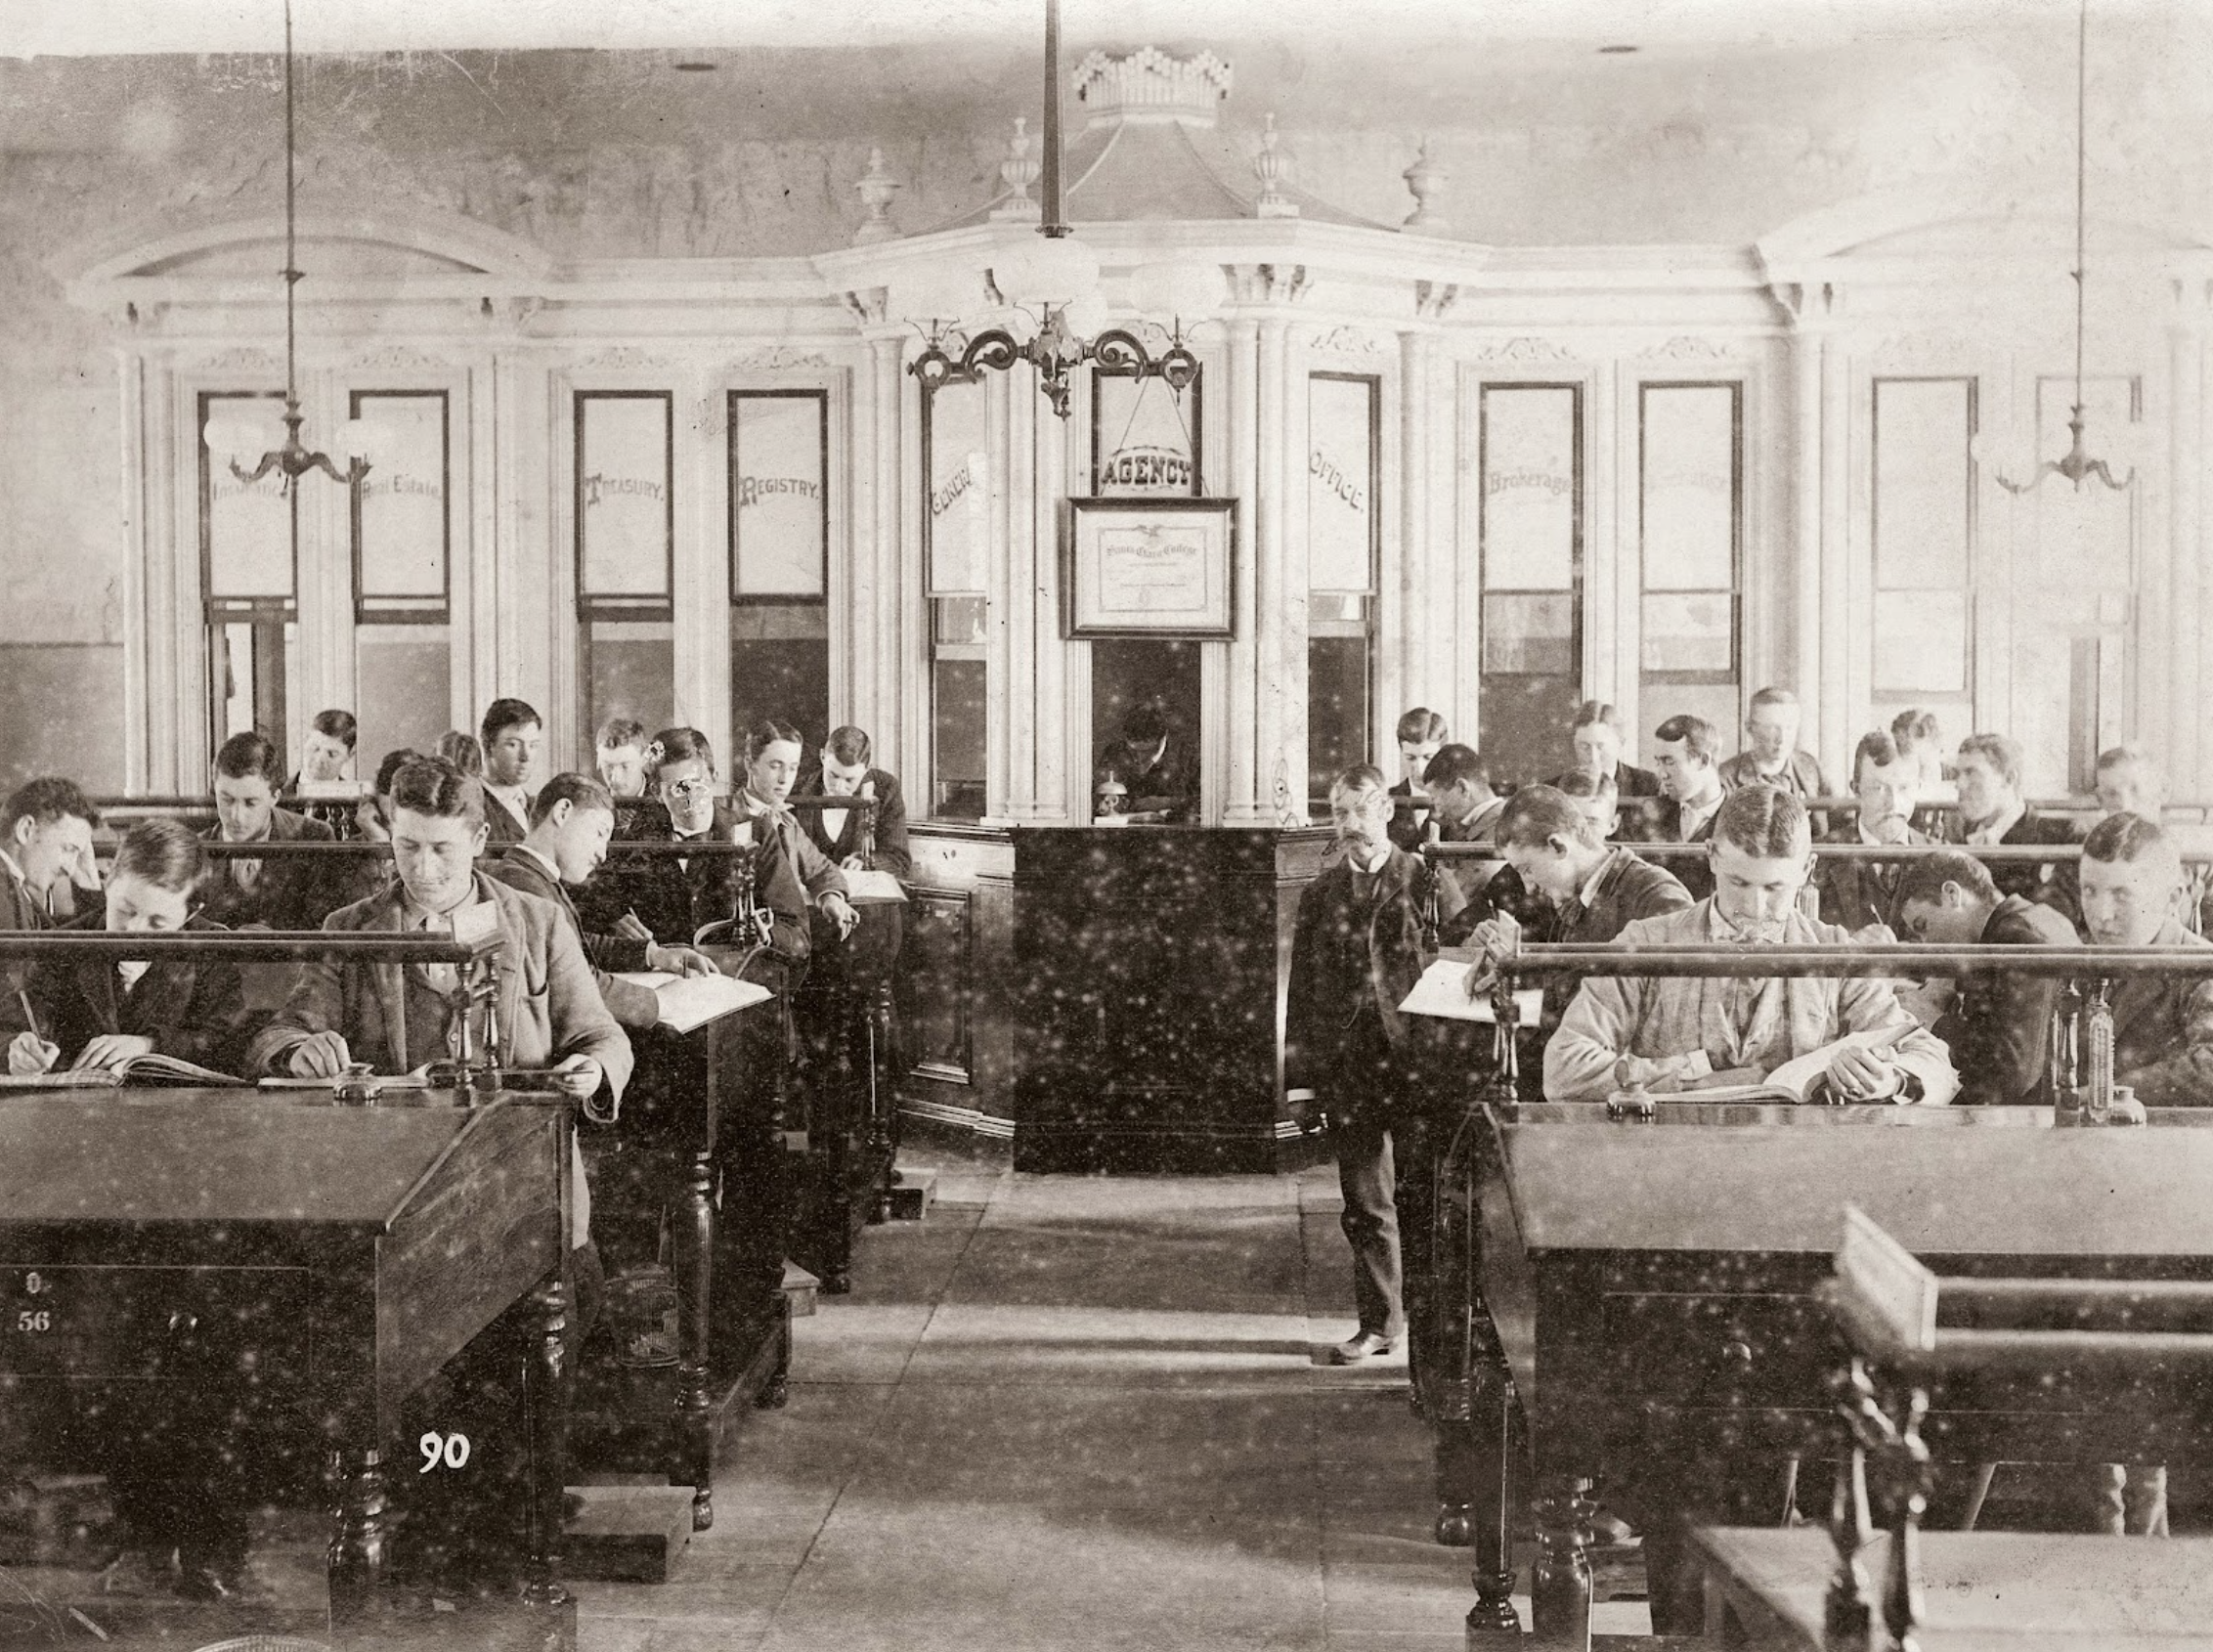 Historical photo of a Santa Clara University classroom from 1854